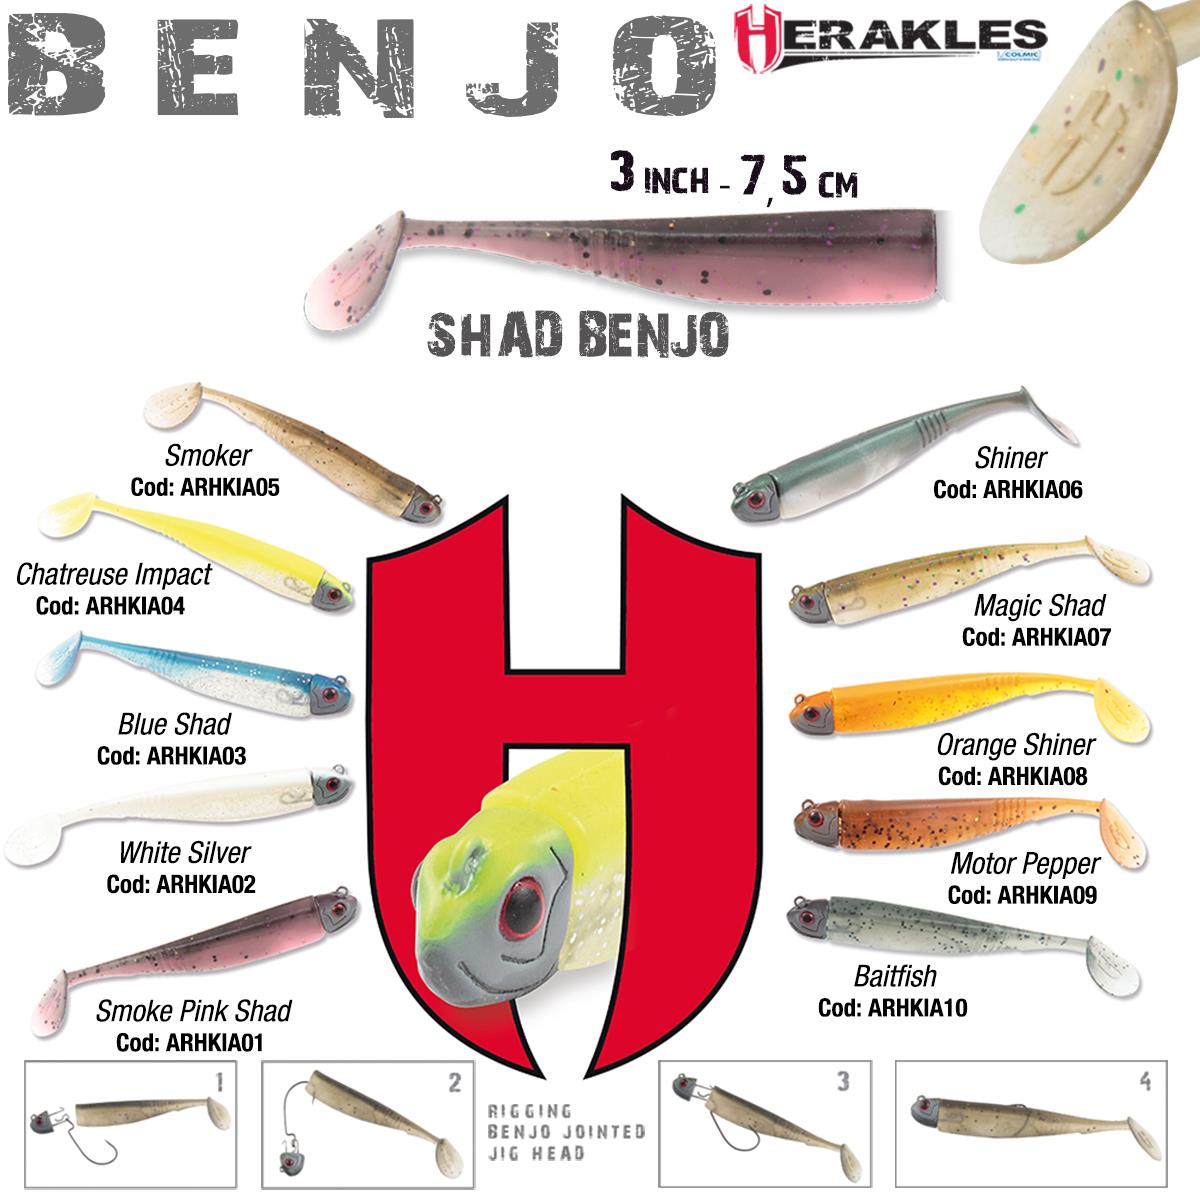 SHAD BENJO 3 7.5cm SHINER